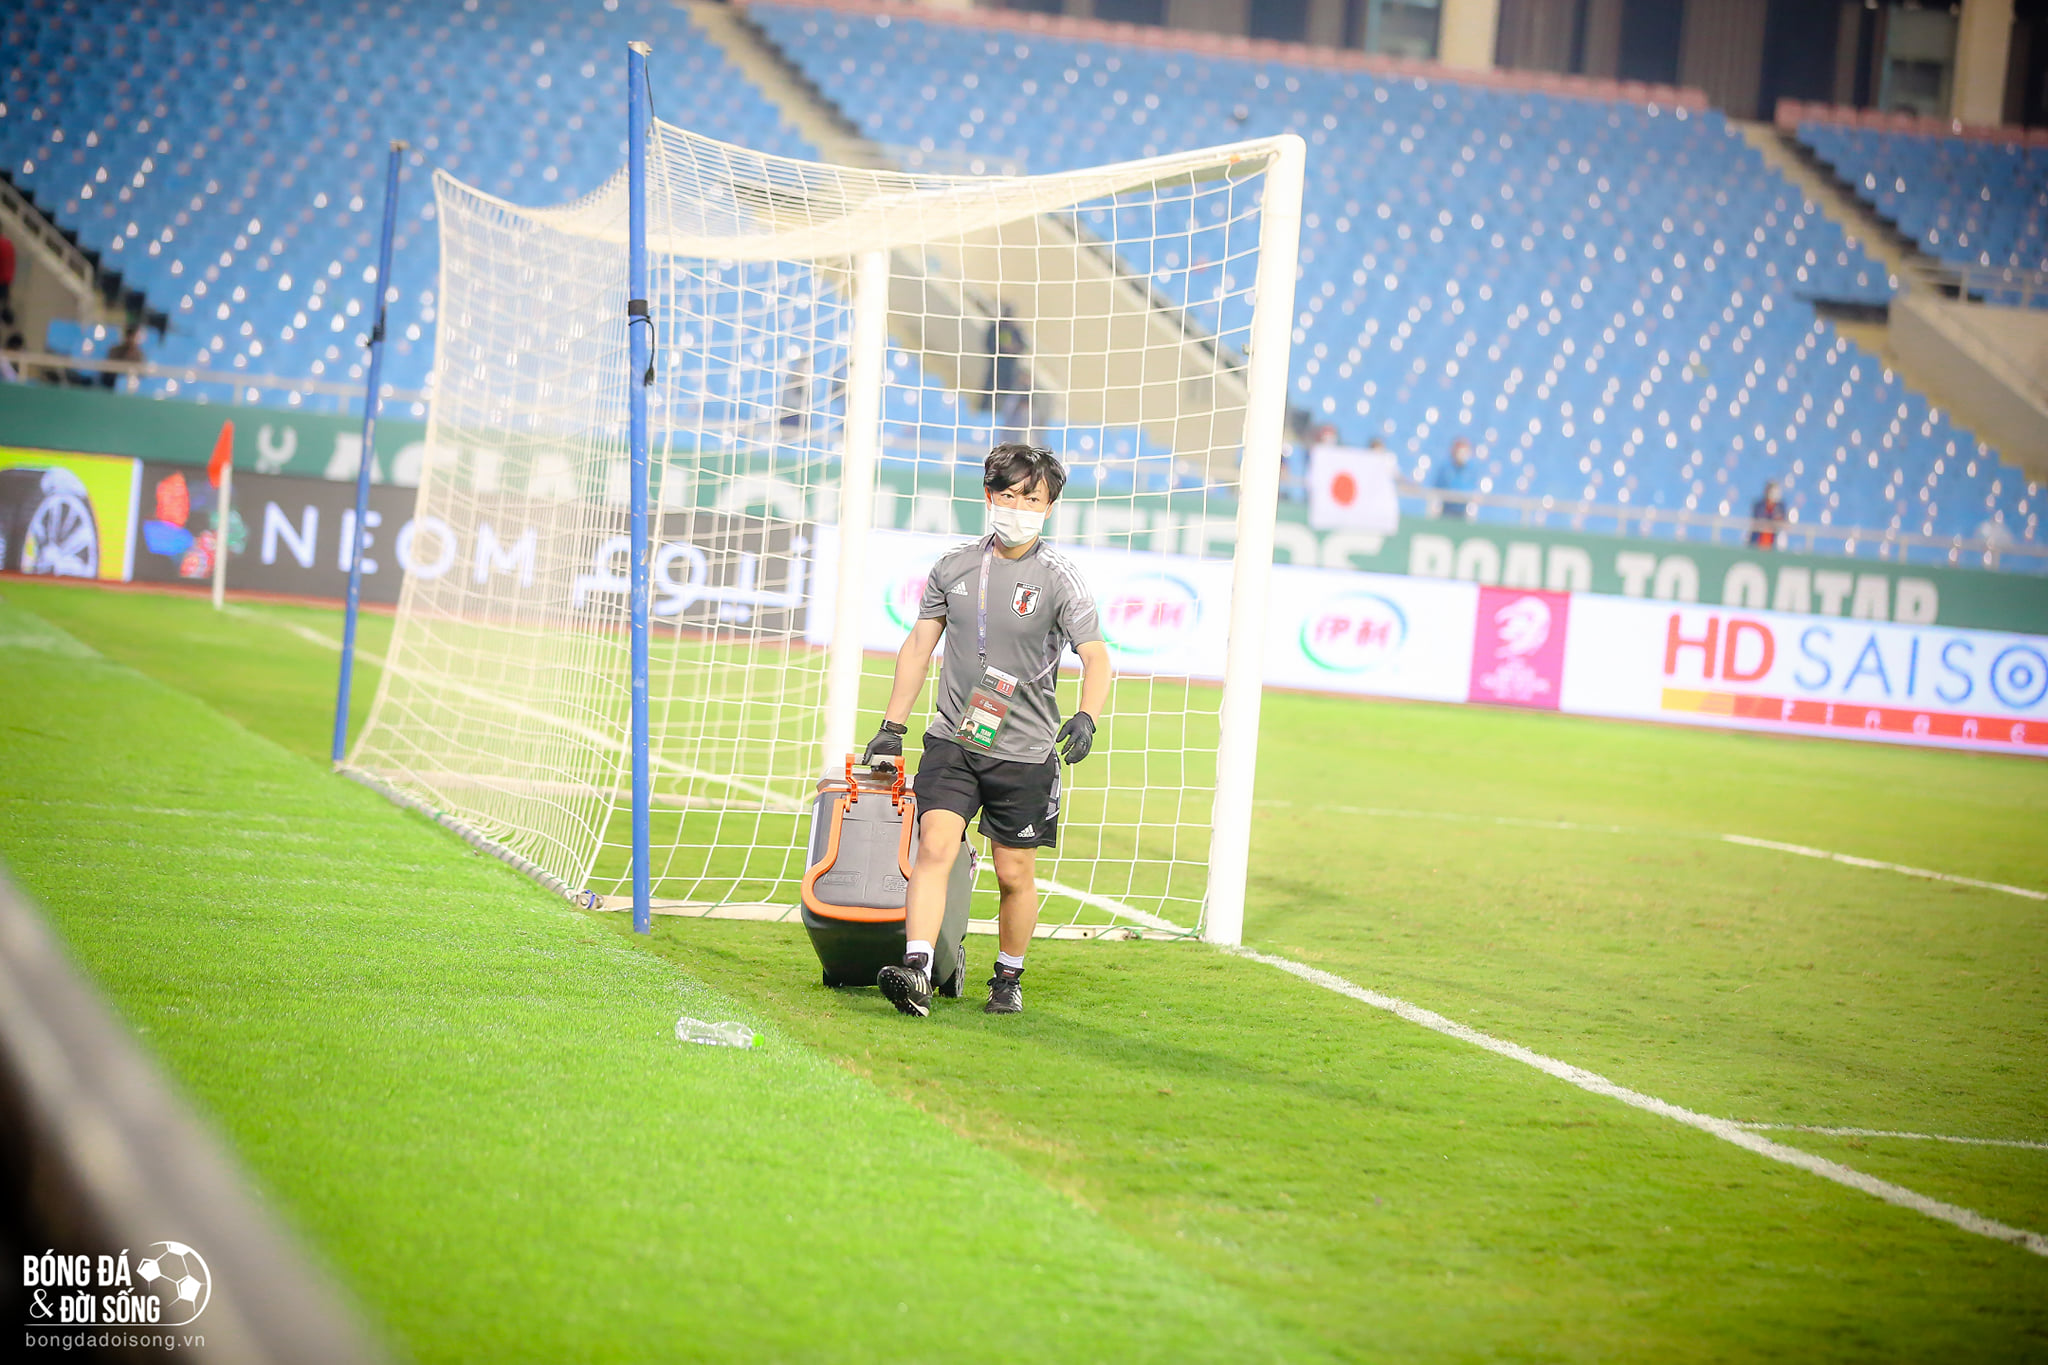 Hành động đẹp: Một thành viên của ĐT Nhật Bản đã đi quanh sân cỏ nhặt hết chai nước mà hai đội bỏ sót sau trận đấu - ảnh 4